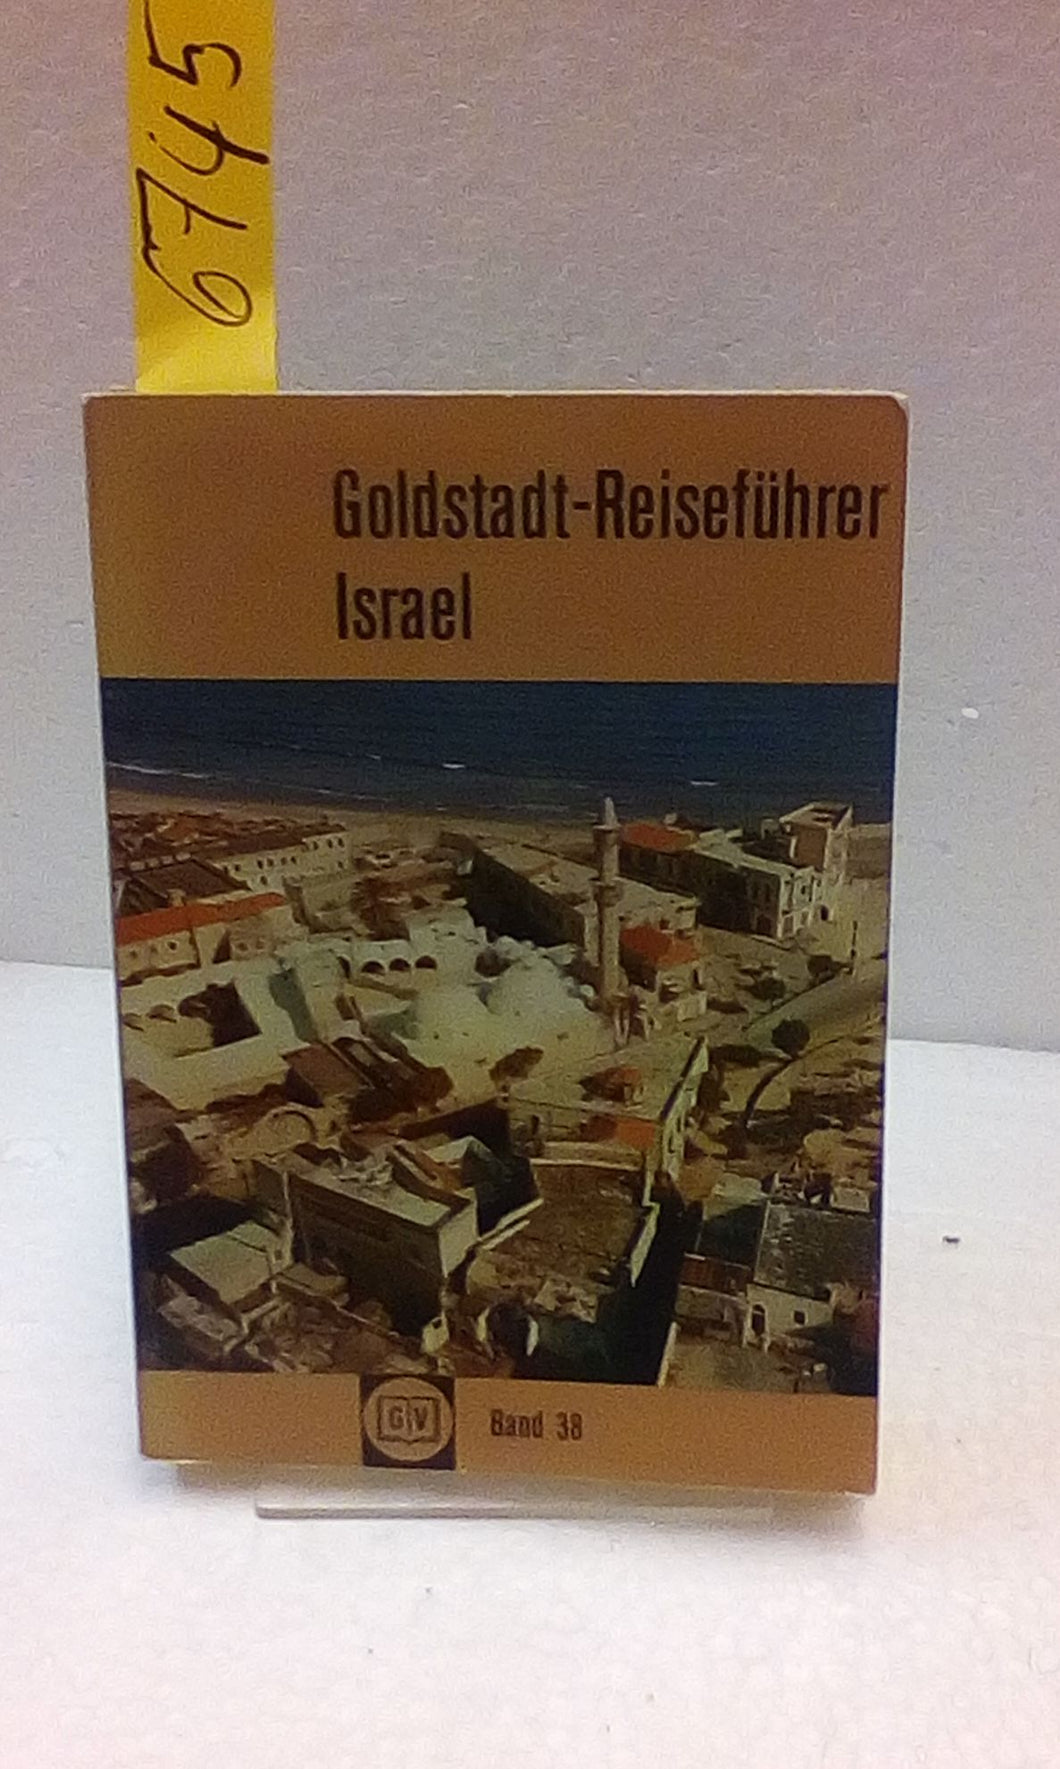 Goldstadt-Reiseführer Israel